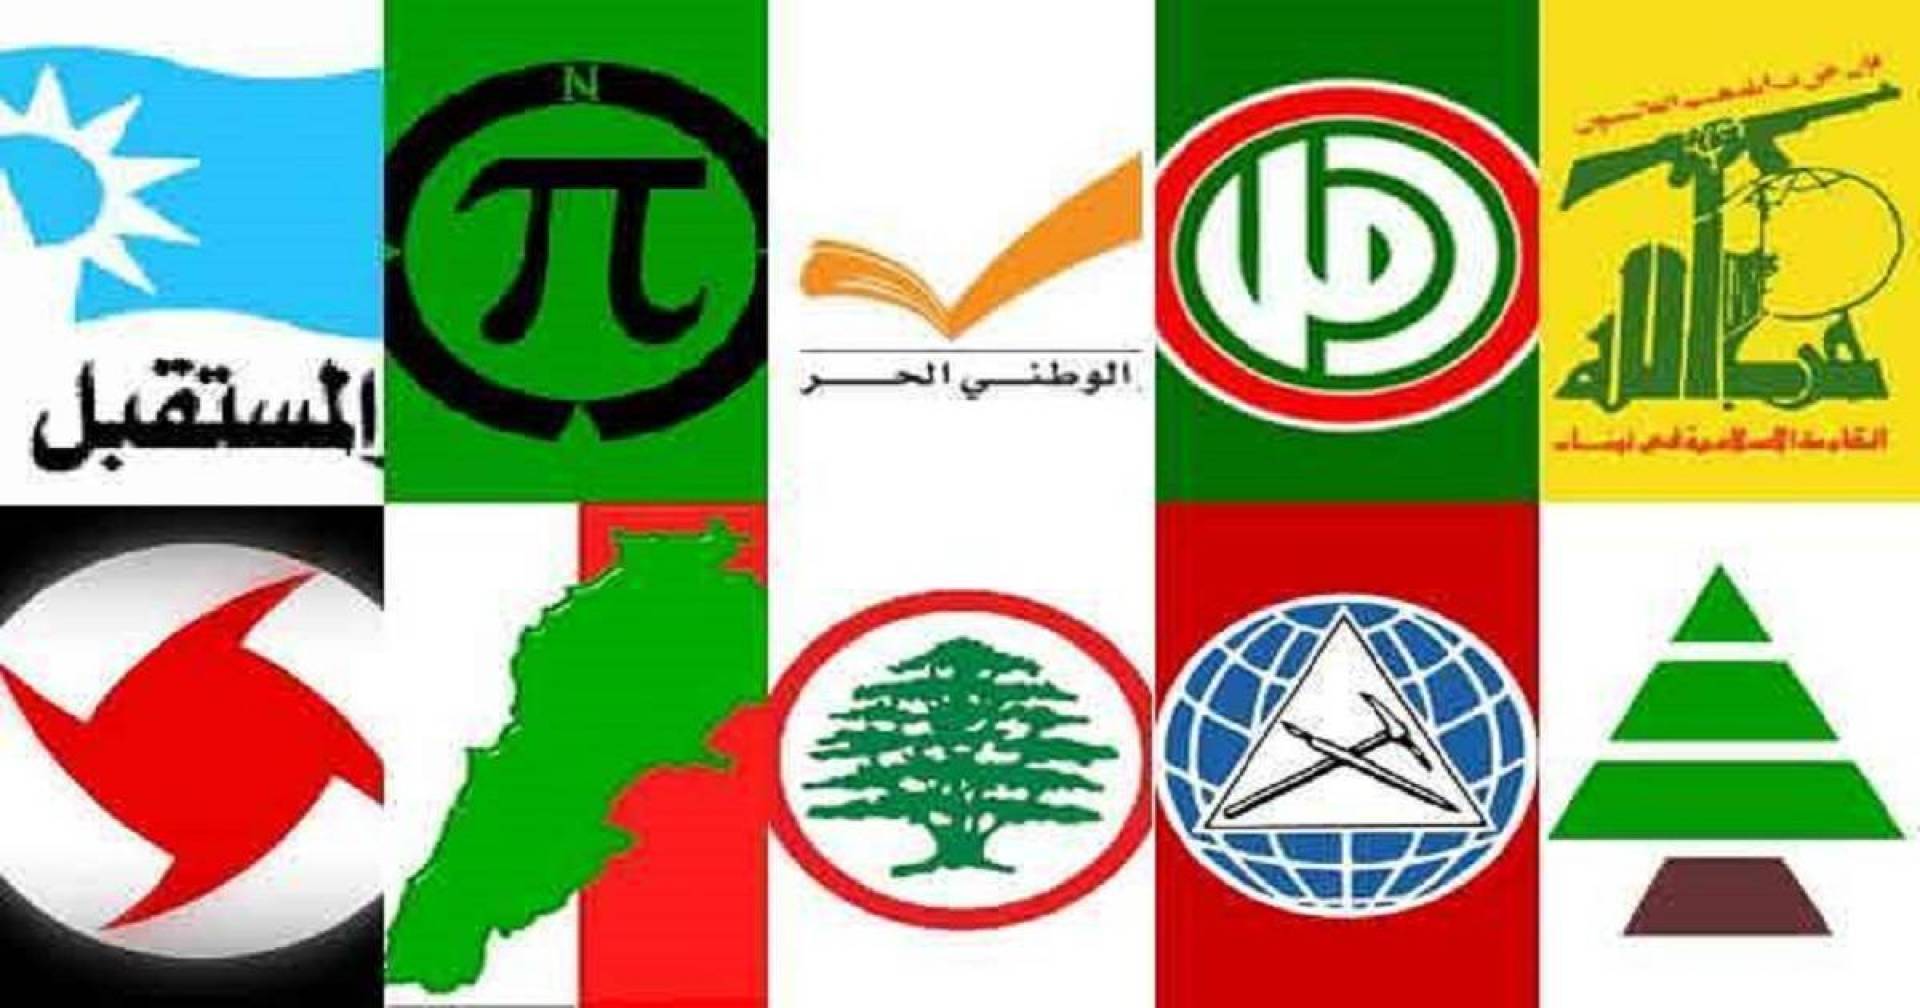 كتب الأستاذ حليم خاتون: نظرة سريعة على مستوى المنطق عند الأحزاب في لبنان